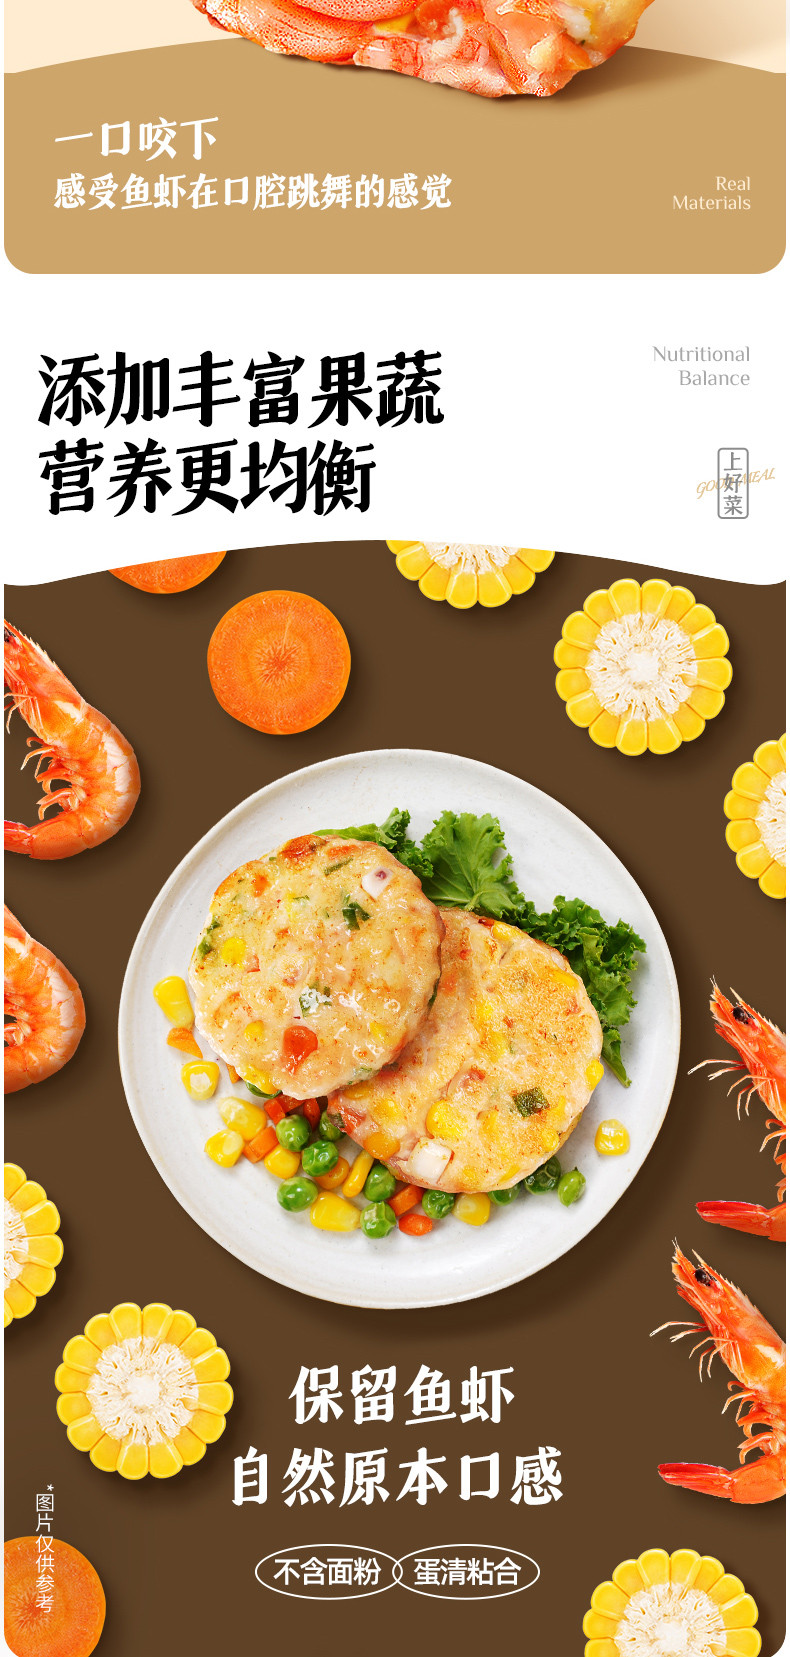 大希地 蔬菜鲜虾饼160g*3